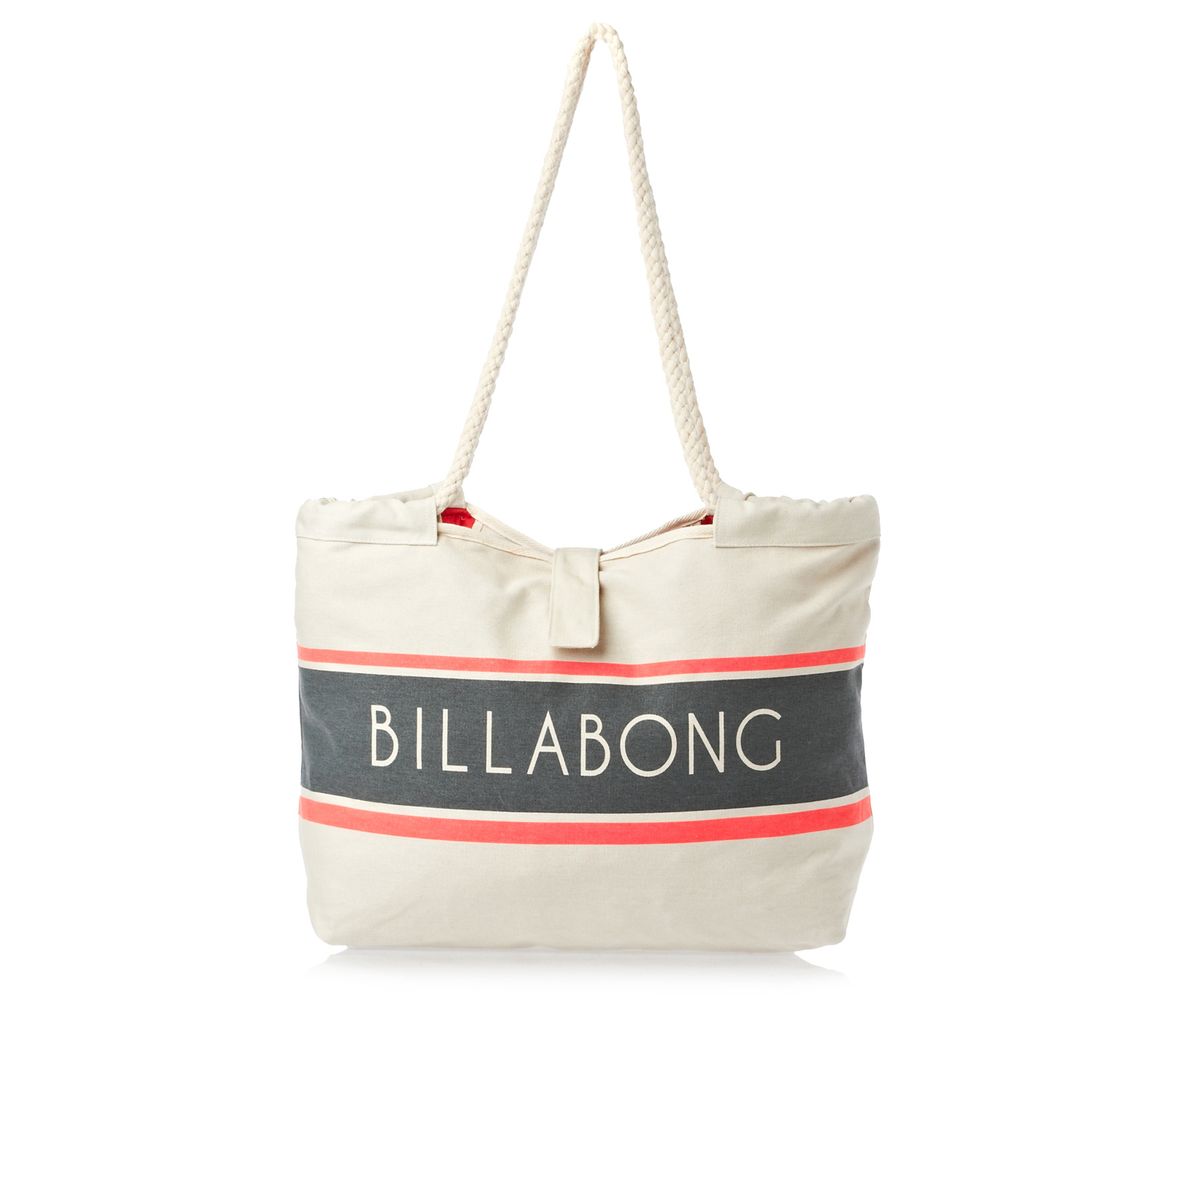 Billabong bags. So Essential Tote Bag.